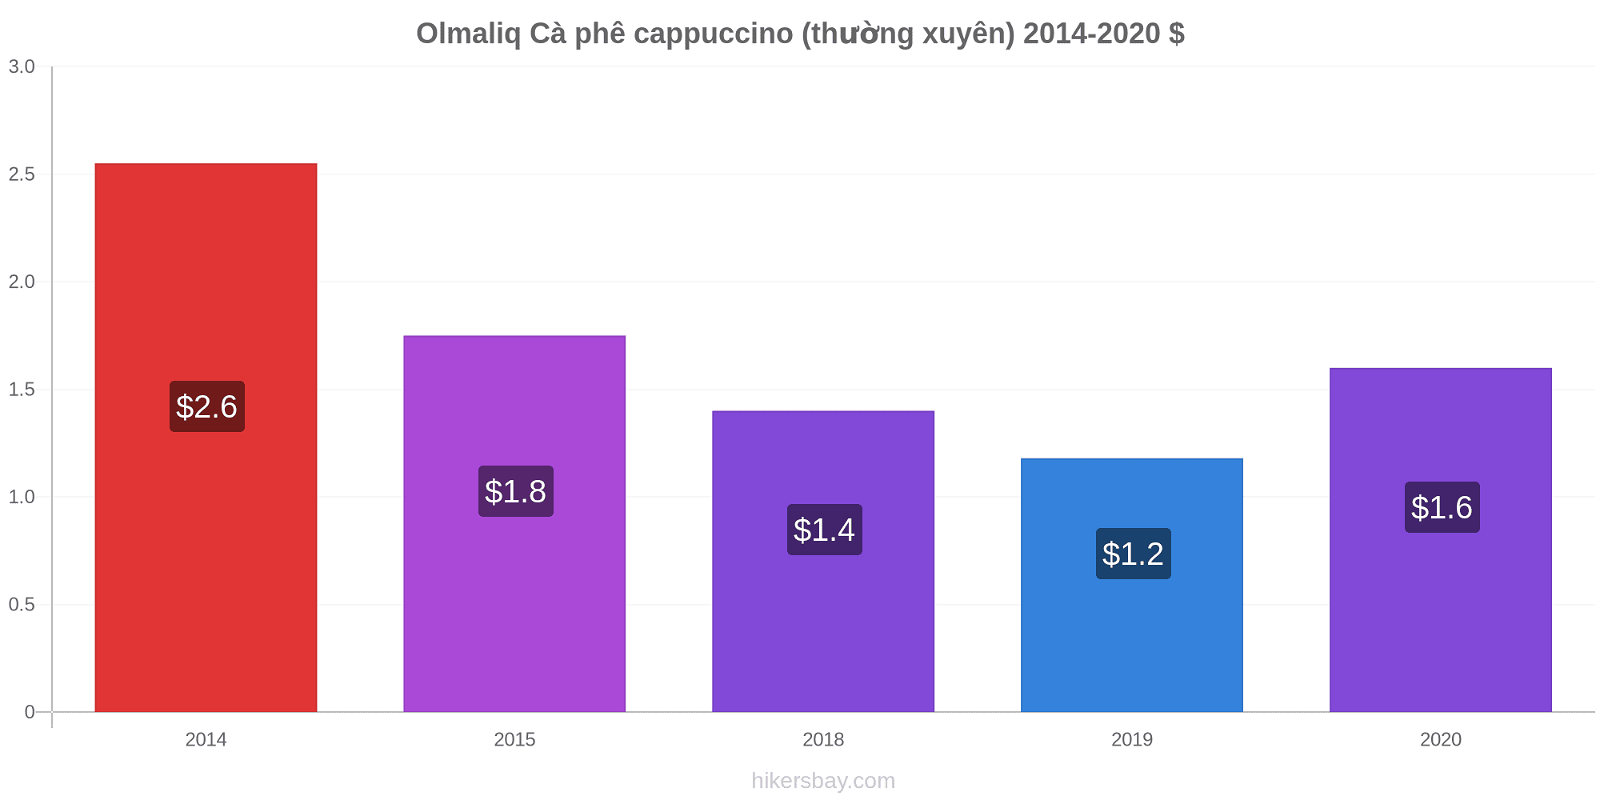 Olmaliq thay đổi giá Cà phê cappuccino (thường xuyên) hikersbay.com